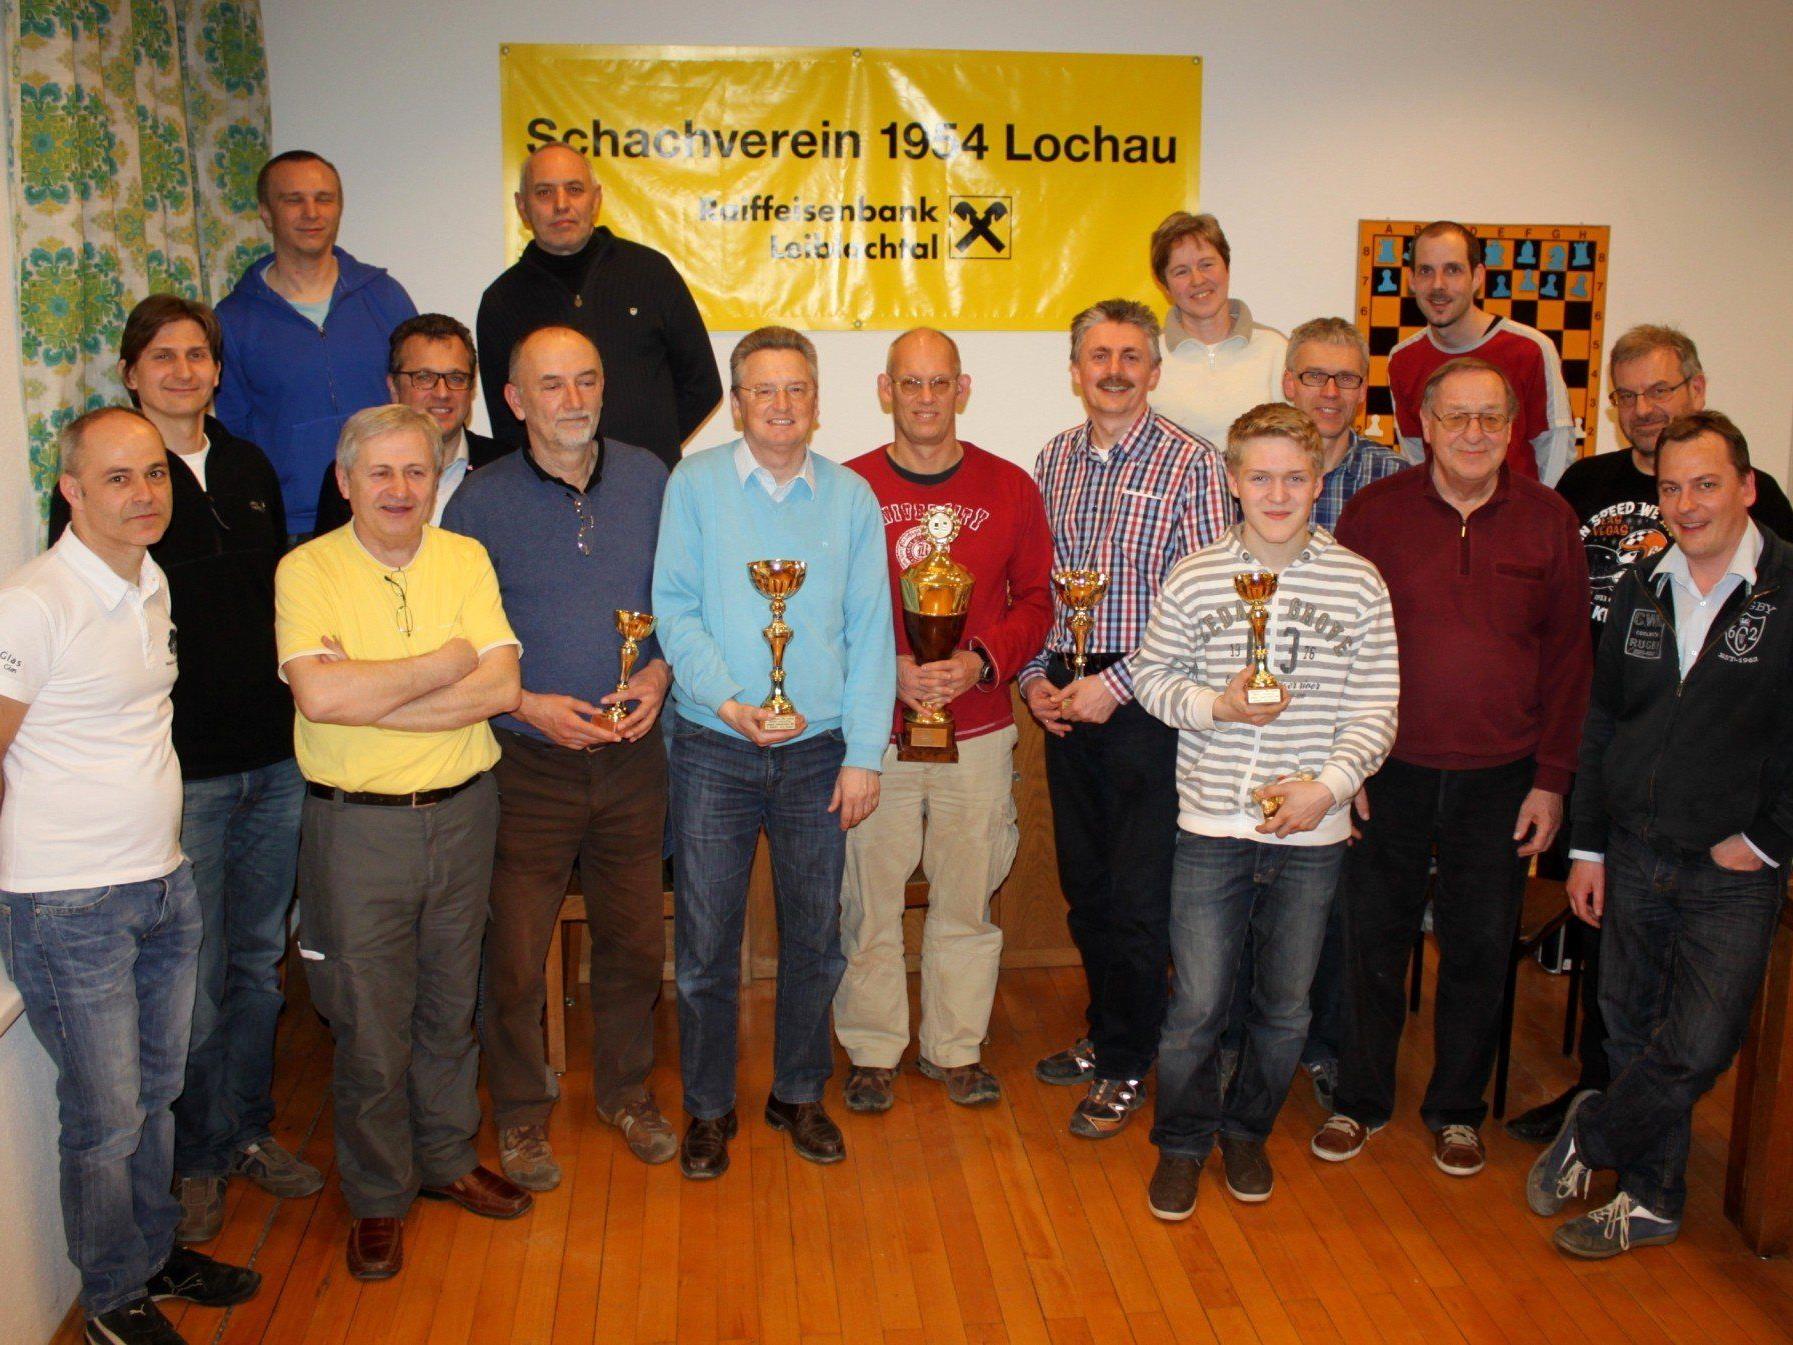 Die erfolgreichen „Finisher“ des 6. Lochauer Schach-Triathlon im Klublokal des Schachvereins 1954 Lochau im Vereinshaus „Alte Schule“.